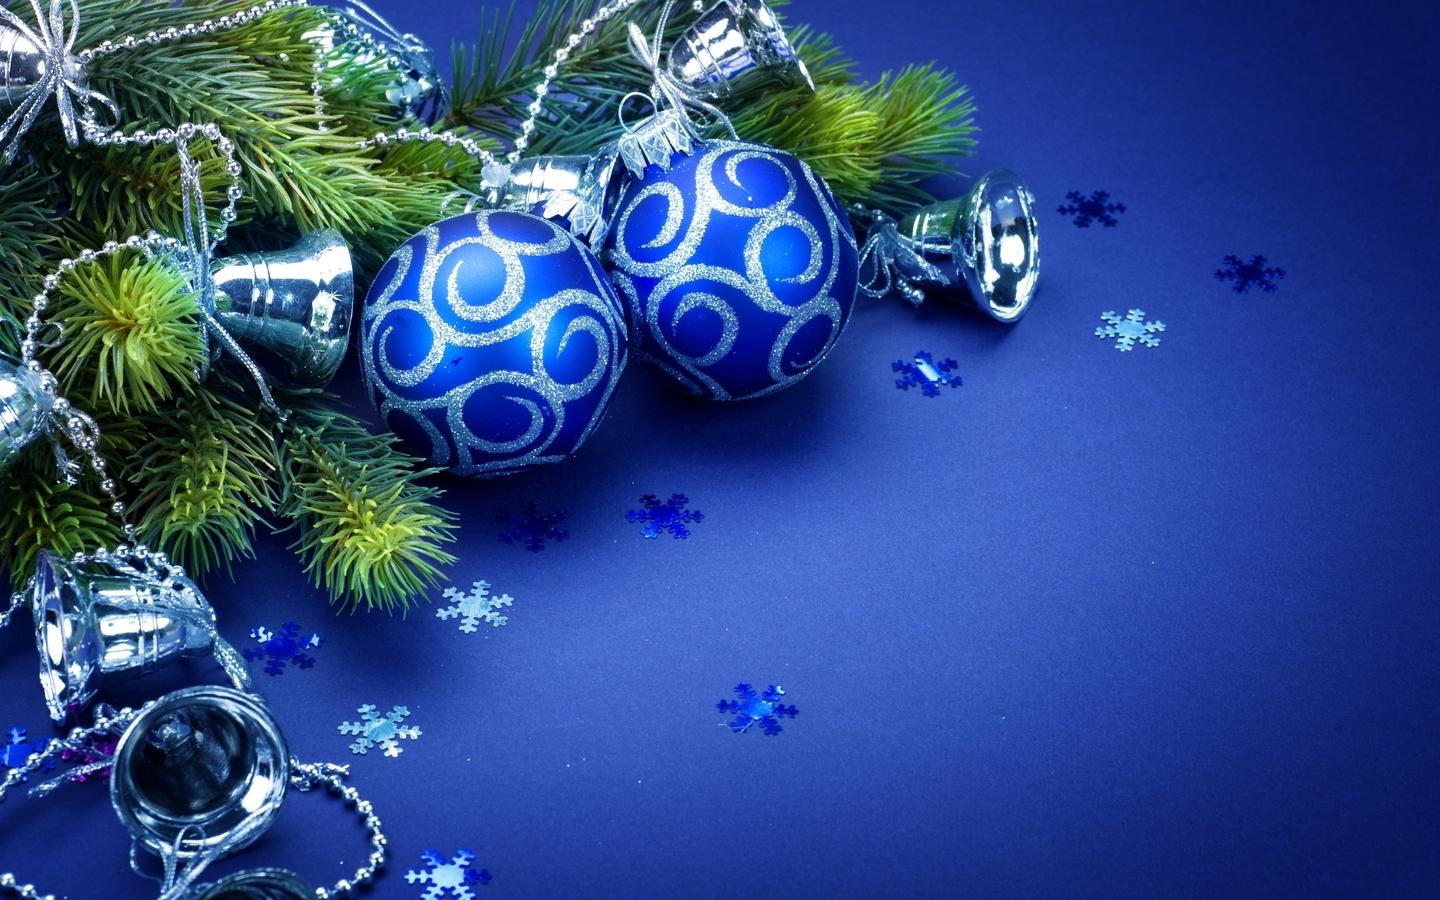 Скачать обои и картинки новый год, зима, шары, ёлочные игрушки,  колокольчики, ветки, ель, снежинки, синий фон для рабочего стола в  разрешении 1440x900